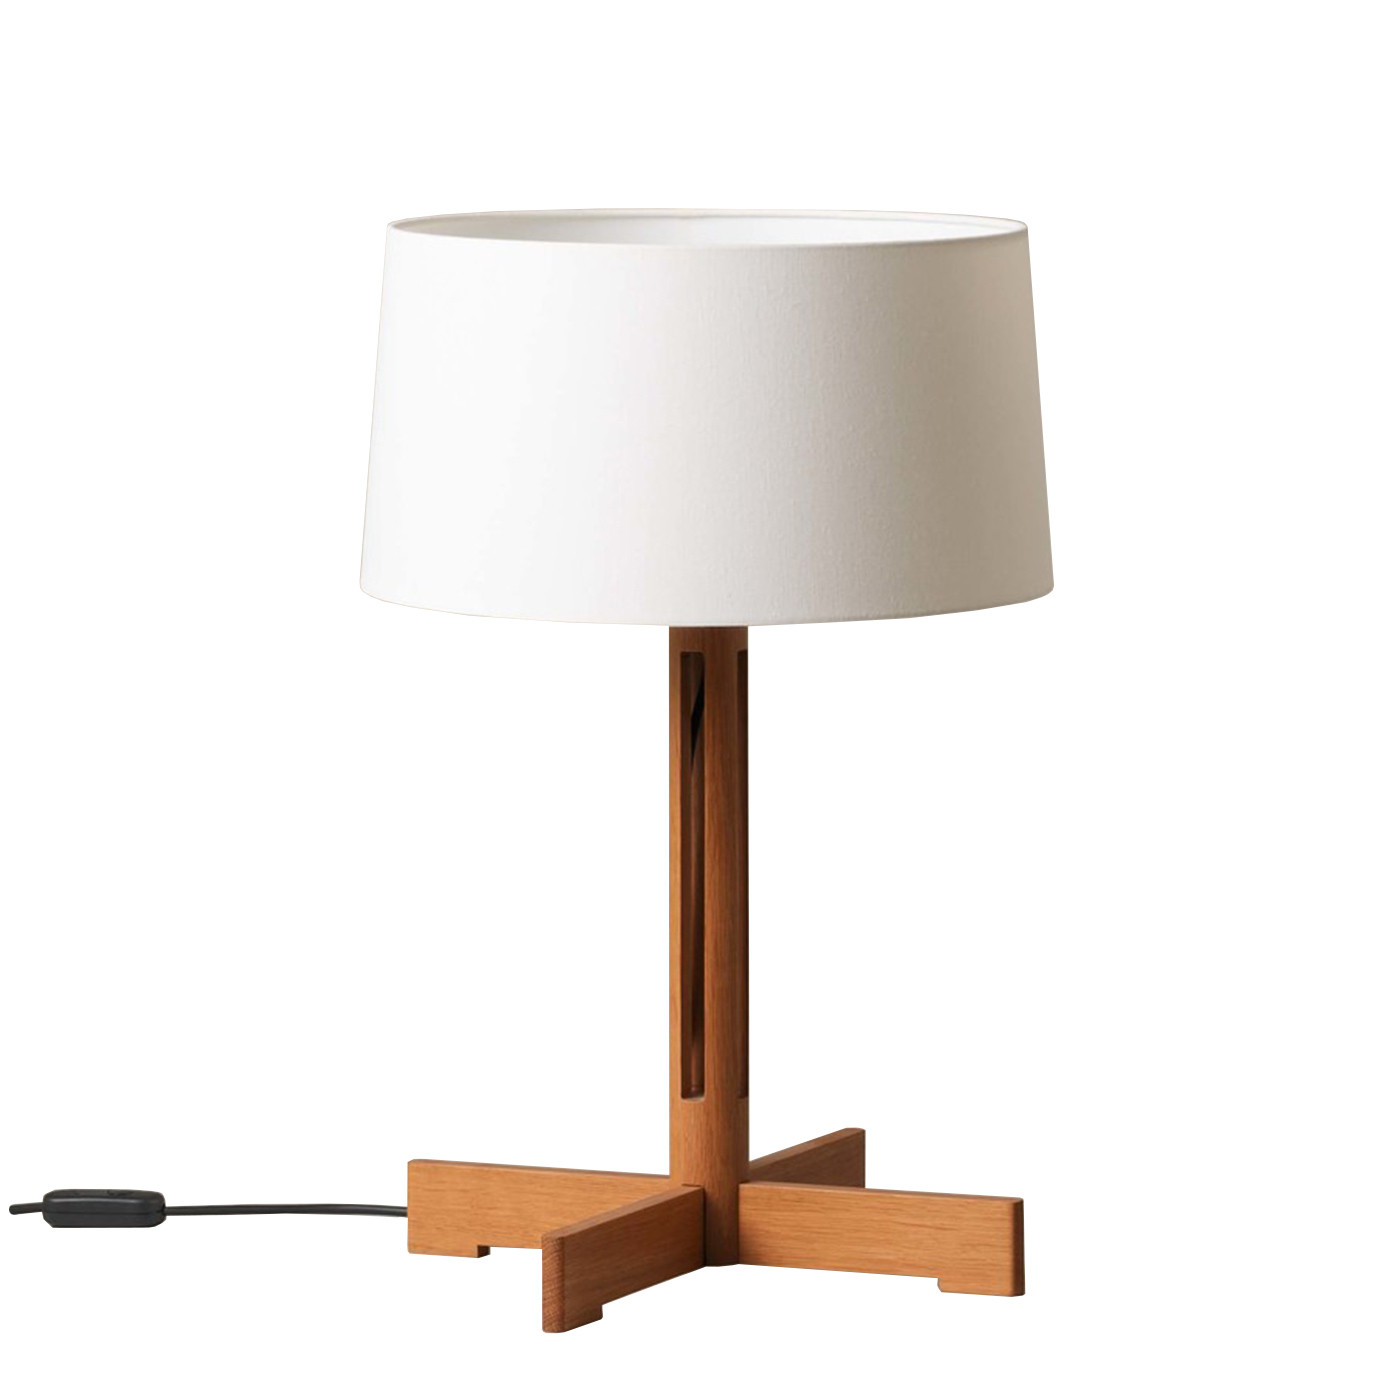 Sante Cole Fad Table Lamp At Nostraforma, Table Lamp Design Classic